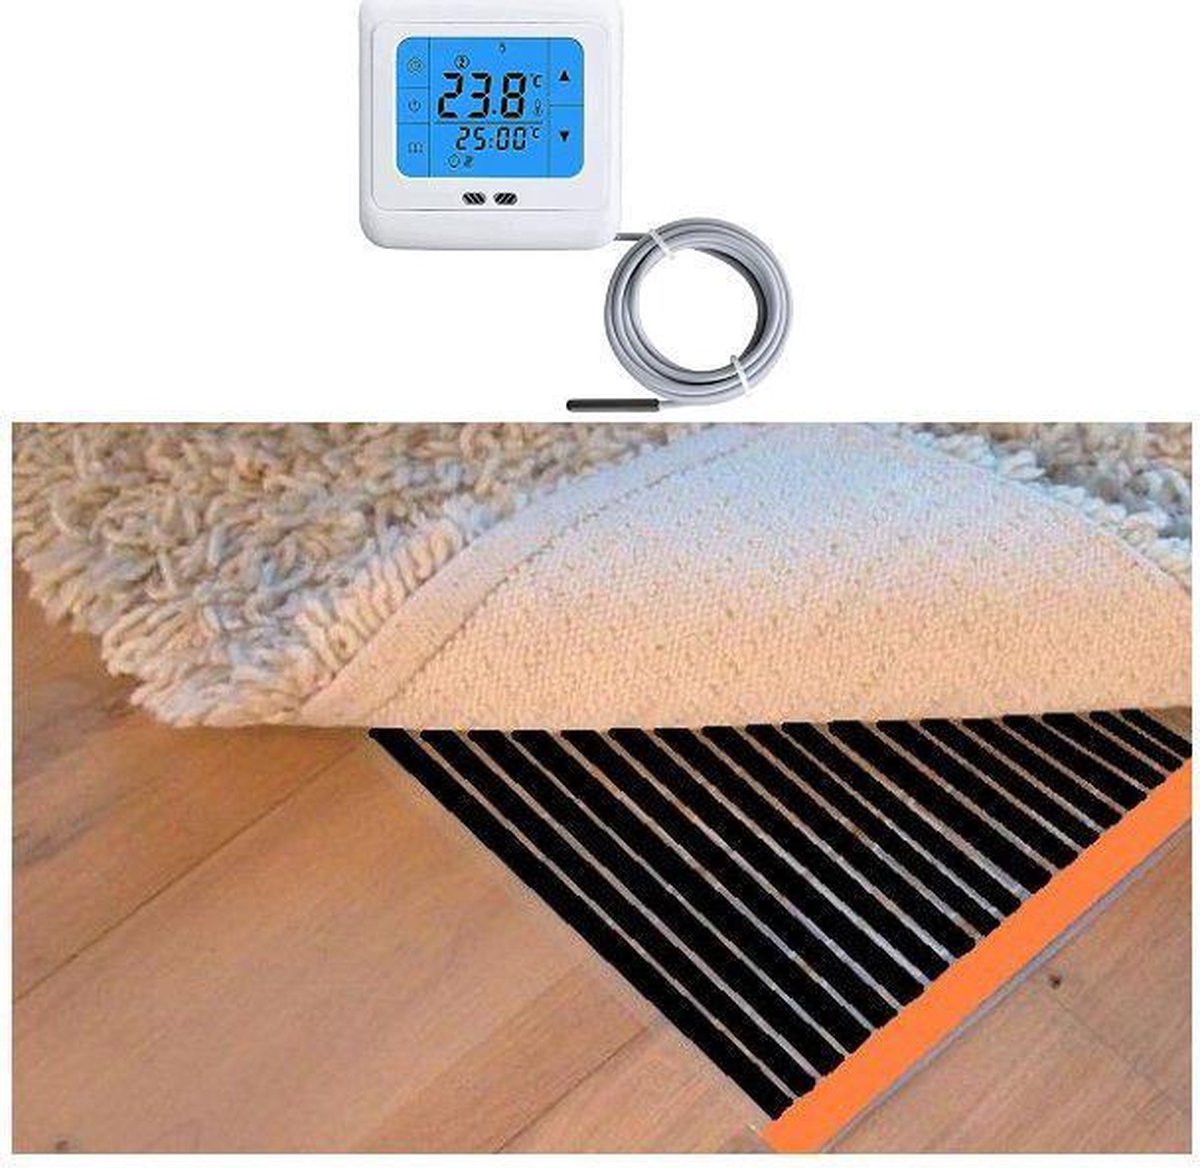 Durensa Woonkamer verwarmingsfolie infrarood folie voor vloerbedekking, tapijten vloerkleden elektrisch met TH Touch thermostaat 150 cm x 950 cm 2280 Watt